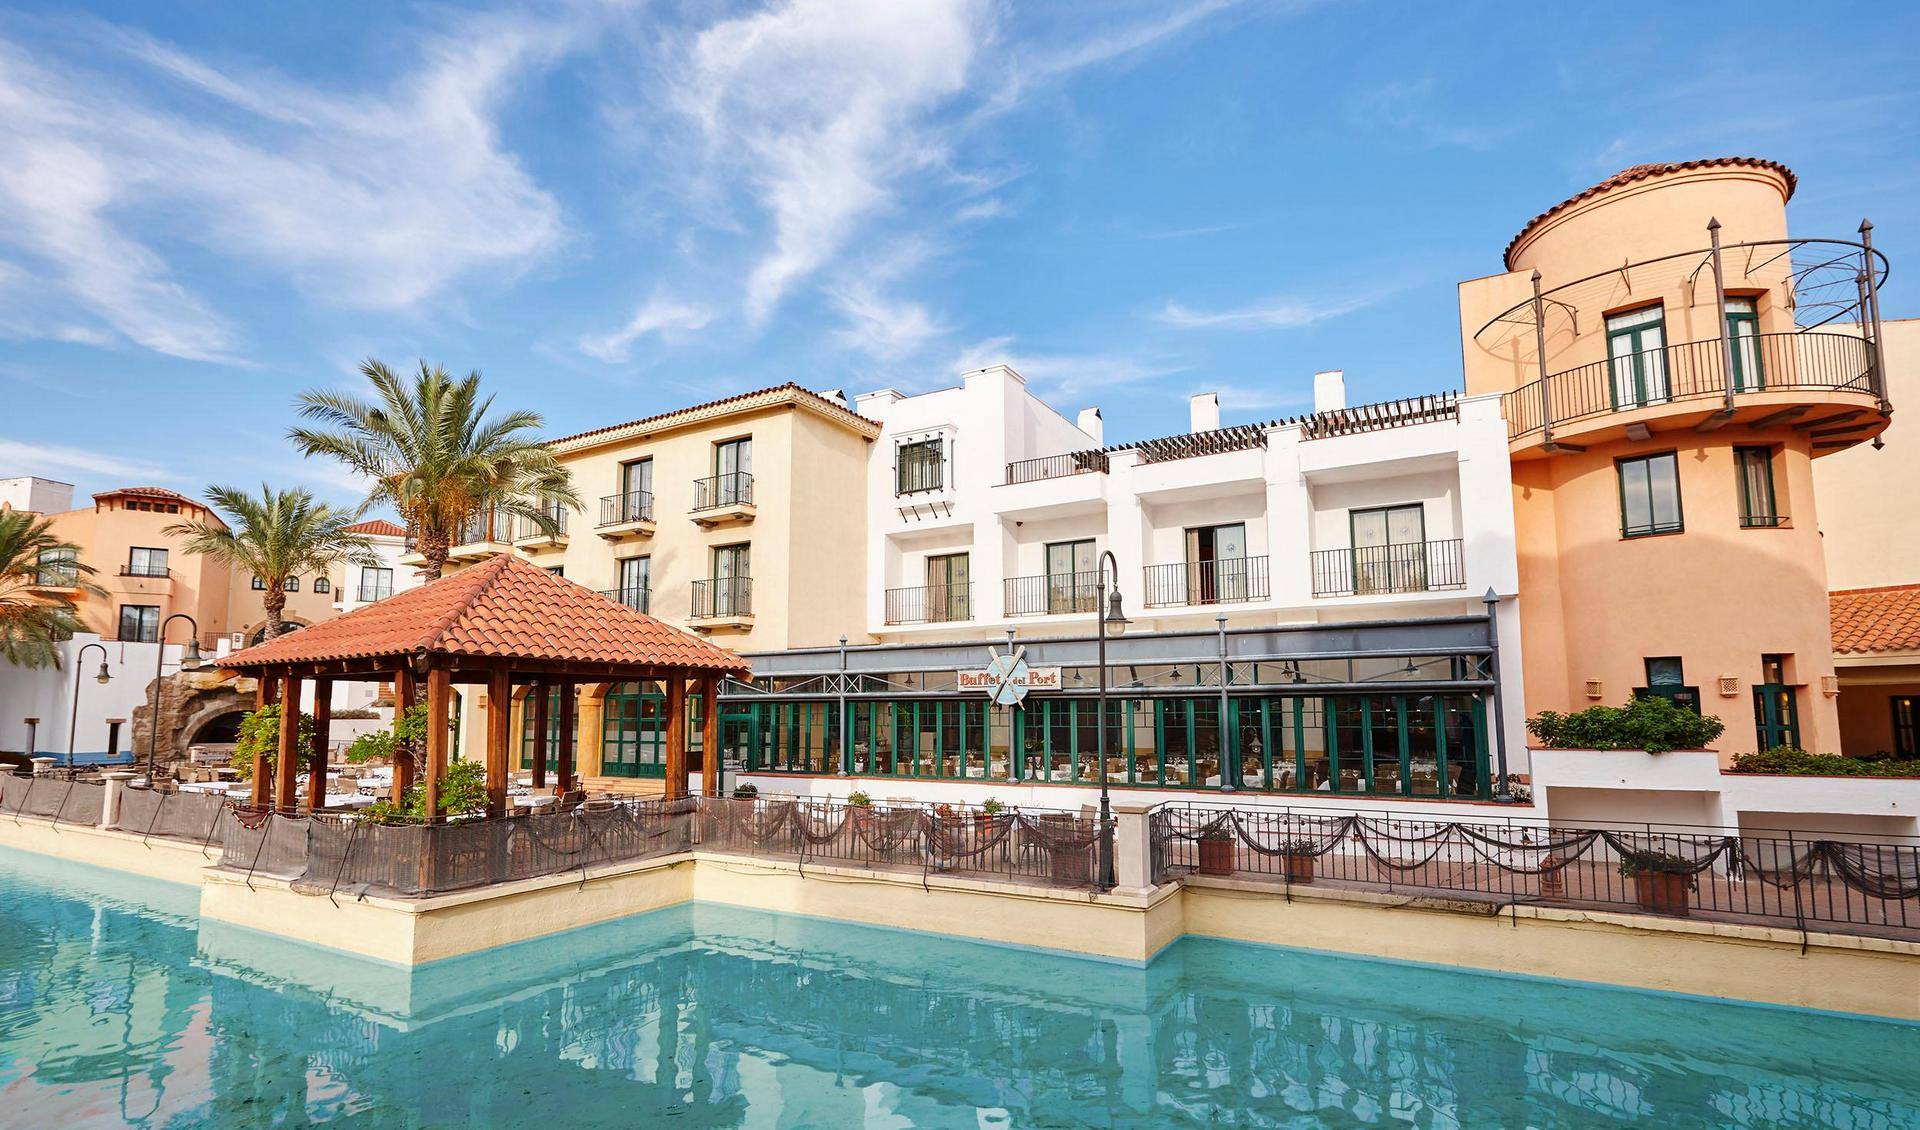 PortAventura Hotel - Includes PortAventura Park Tickets